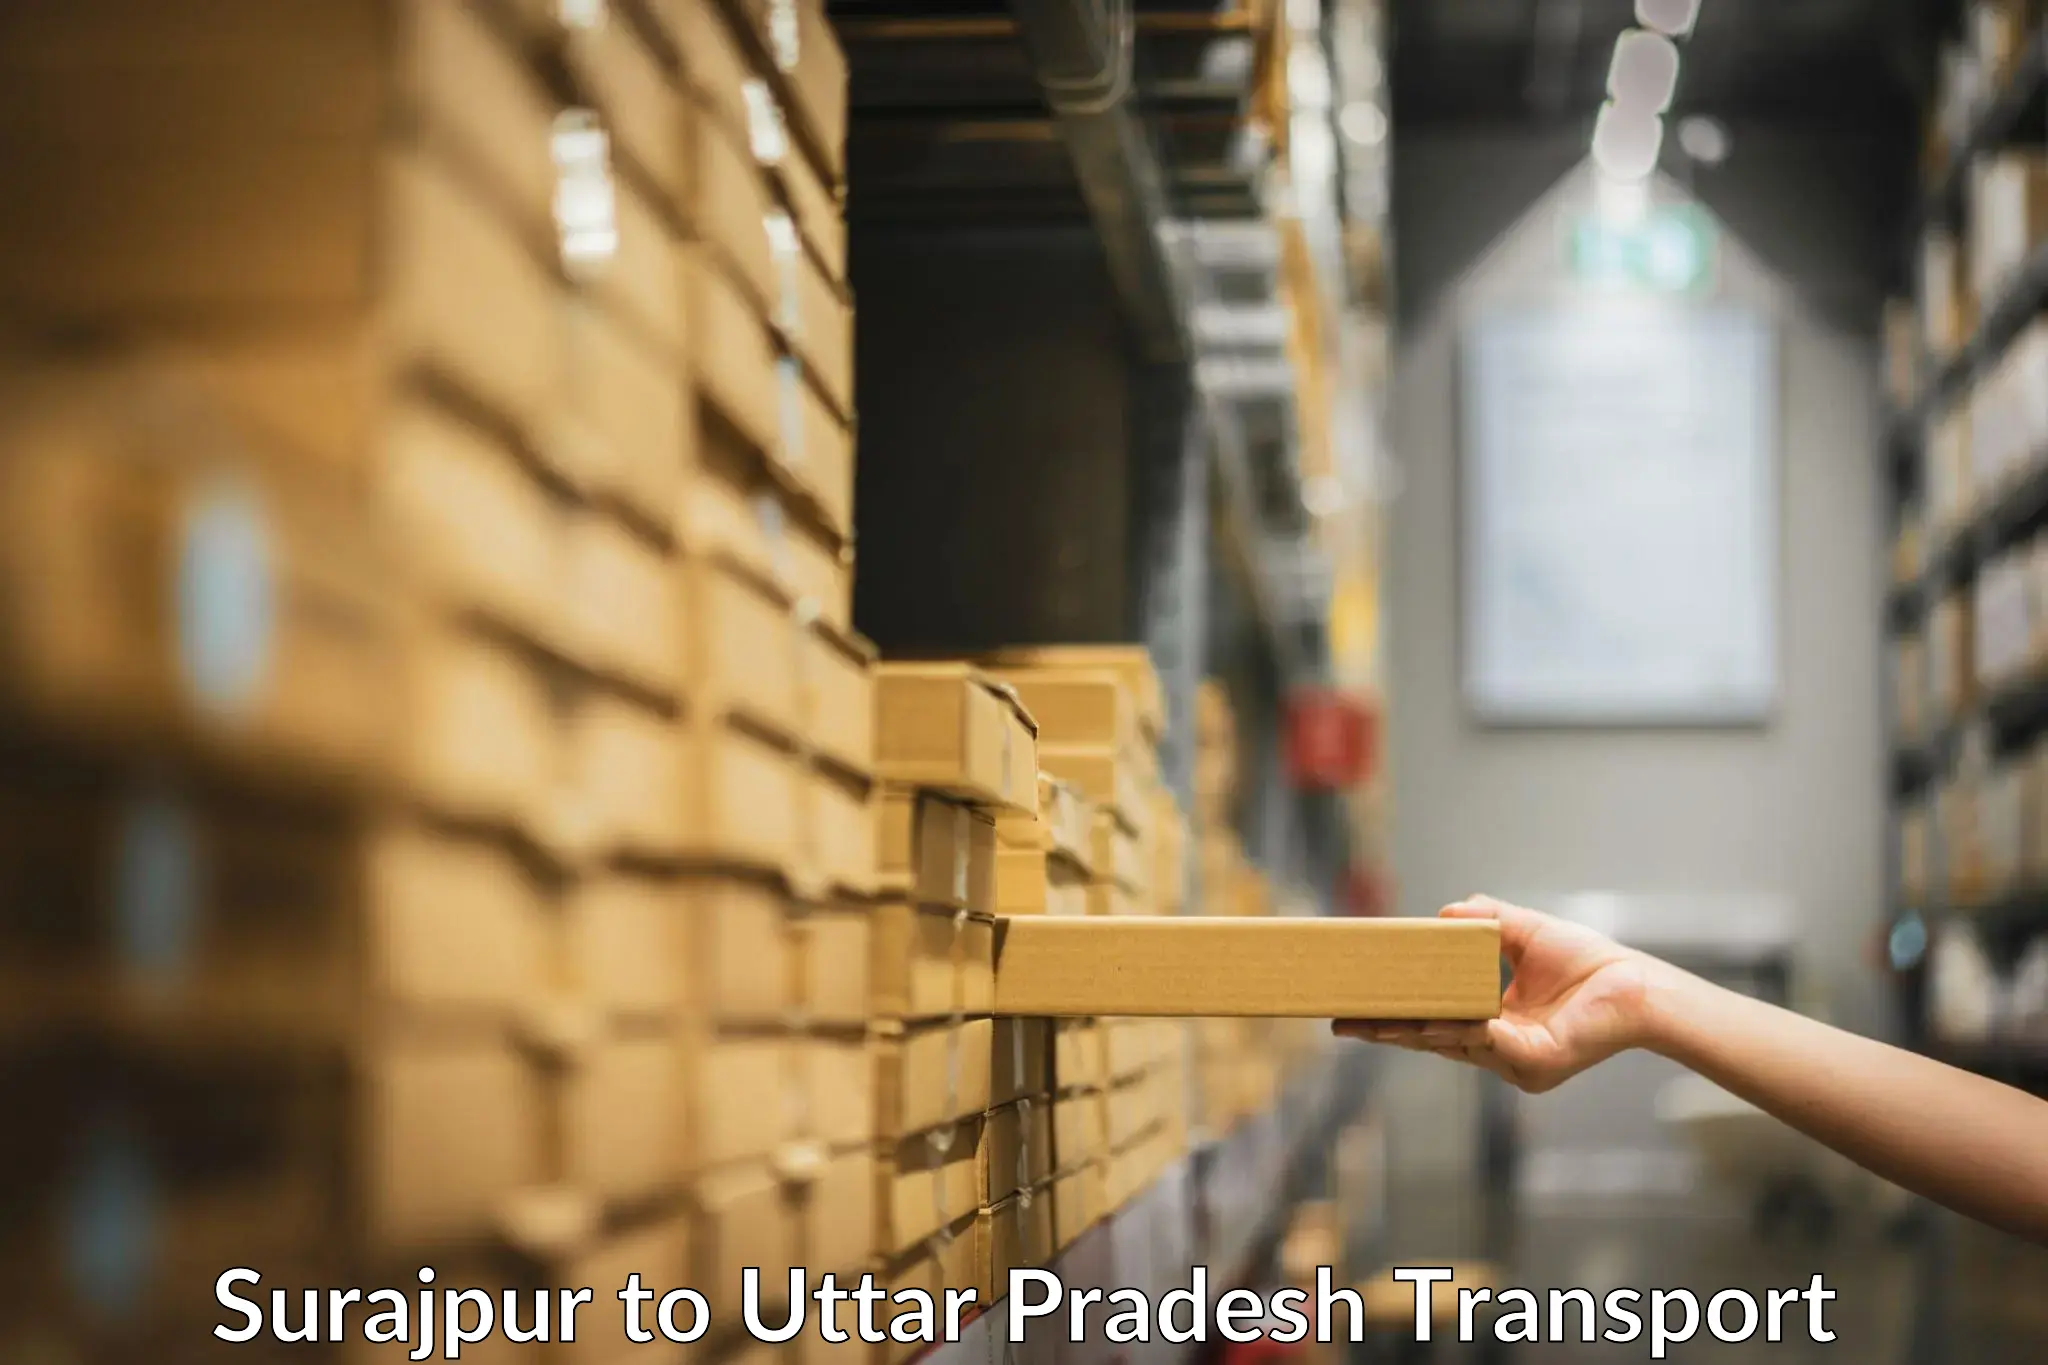 Shipping partner Surajpur to Uttar Pradesh